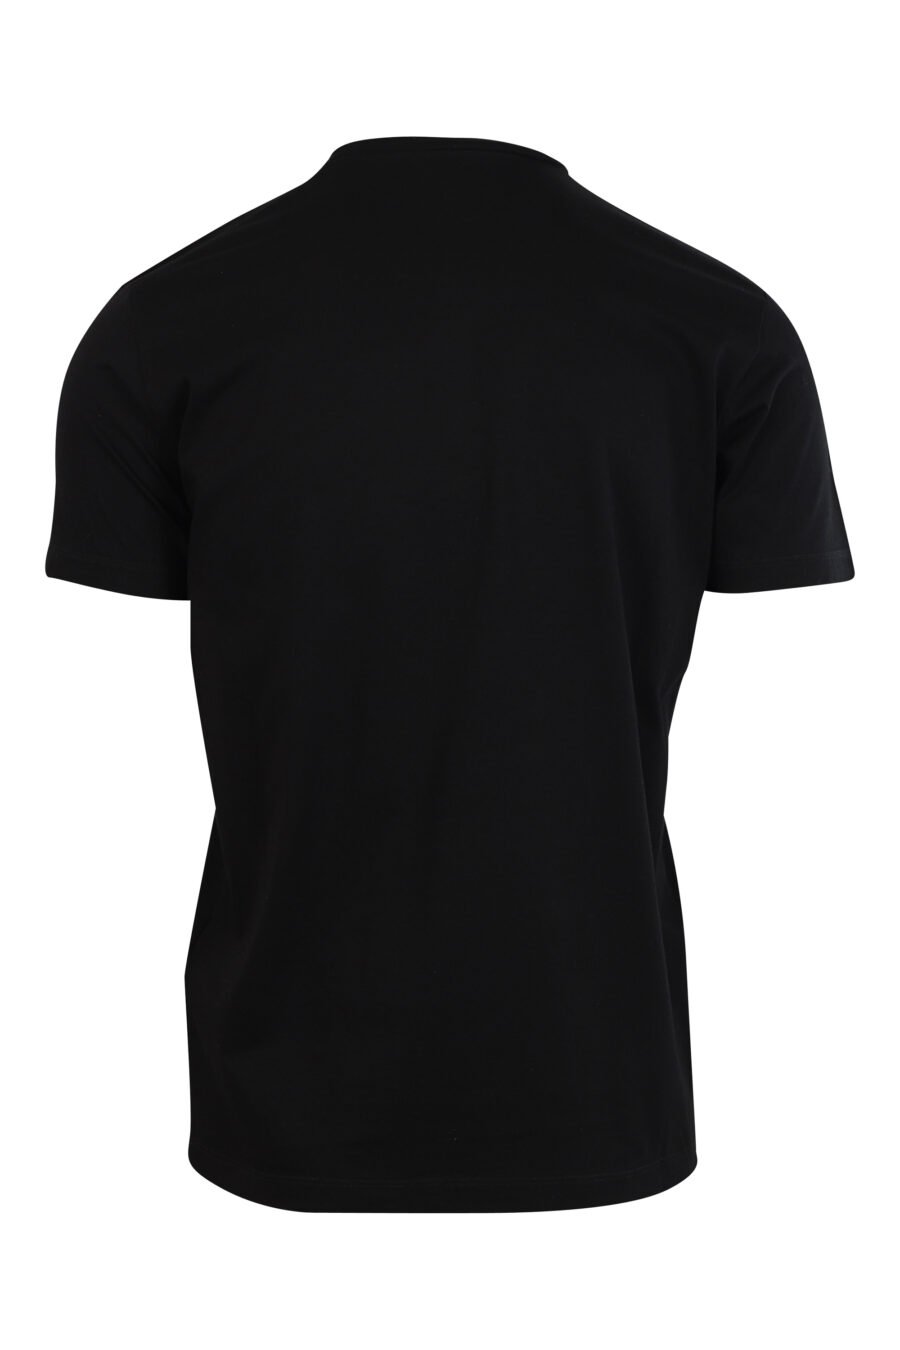 T-shirt noir avec maxilogo "icône cœur pixel" - 8052134980910 2